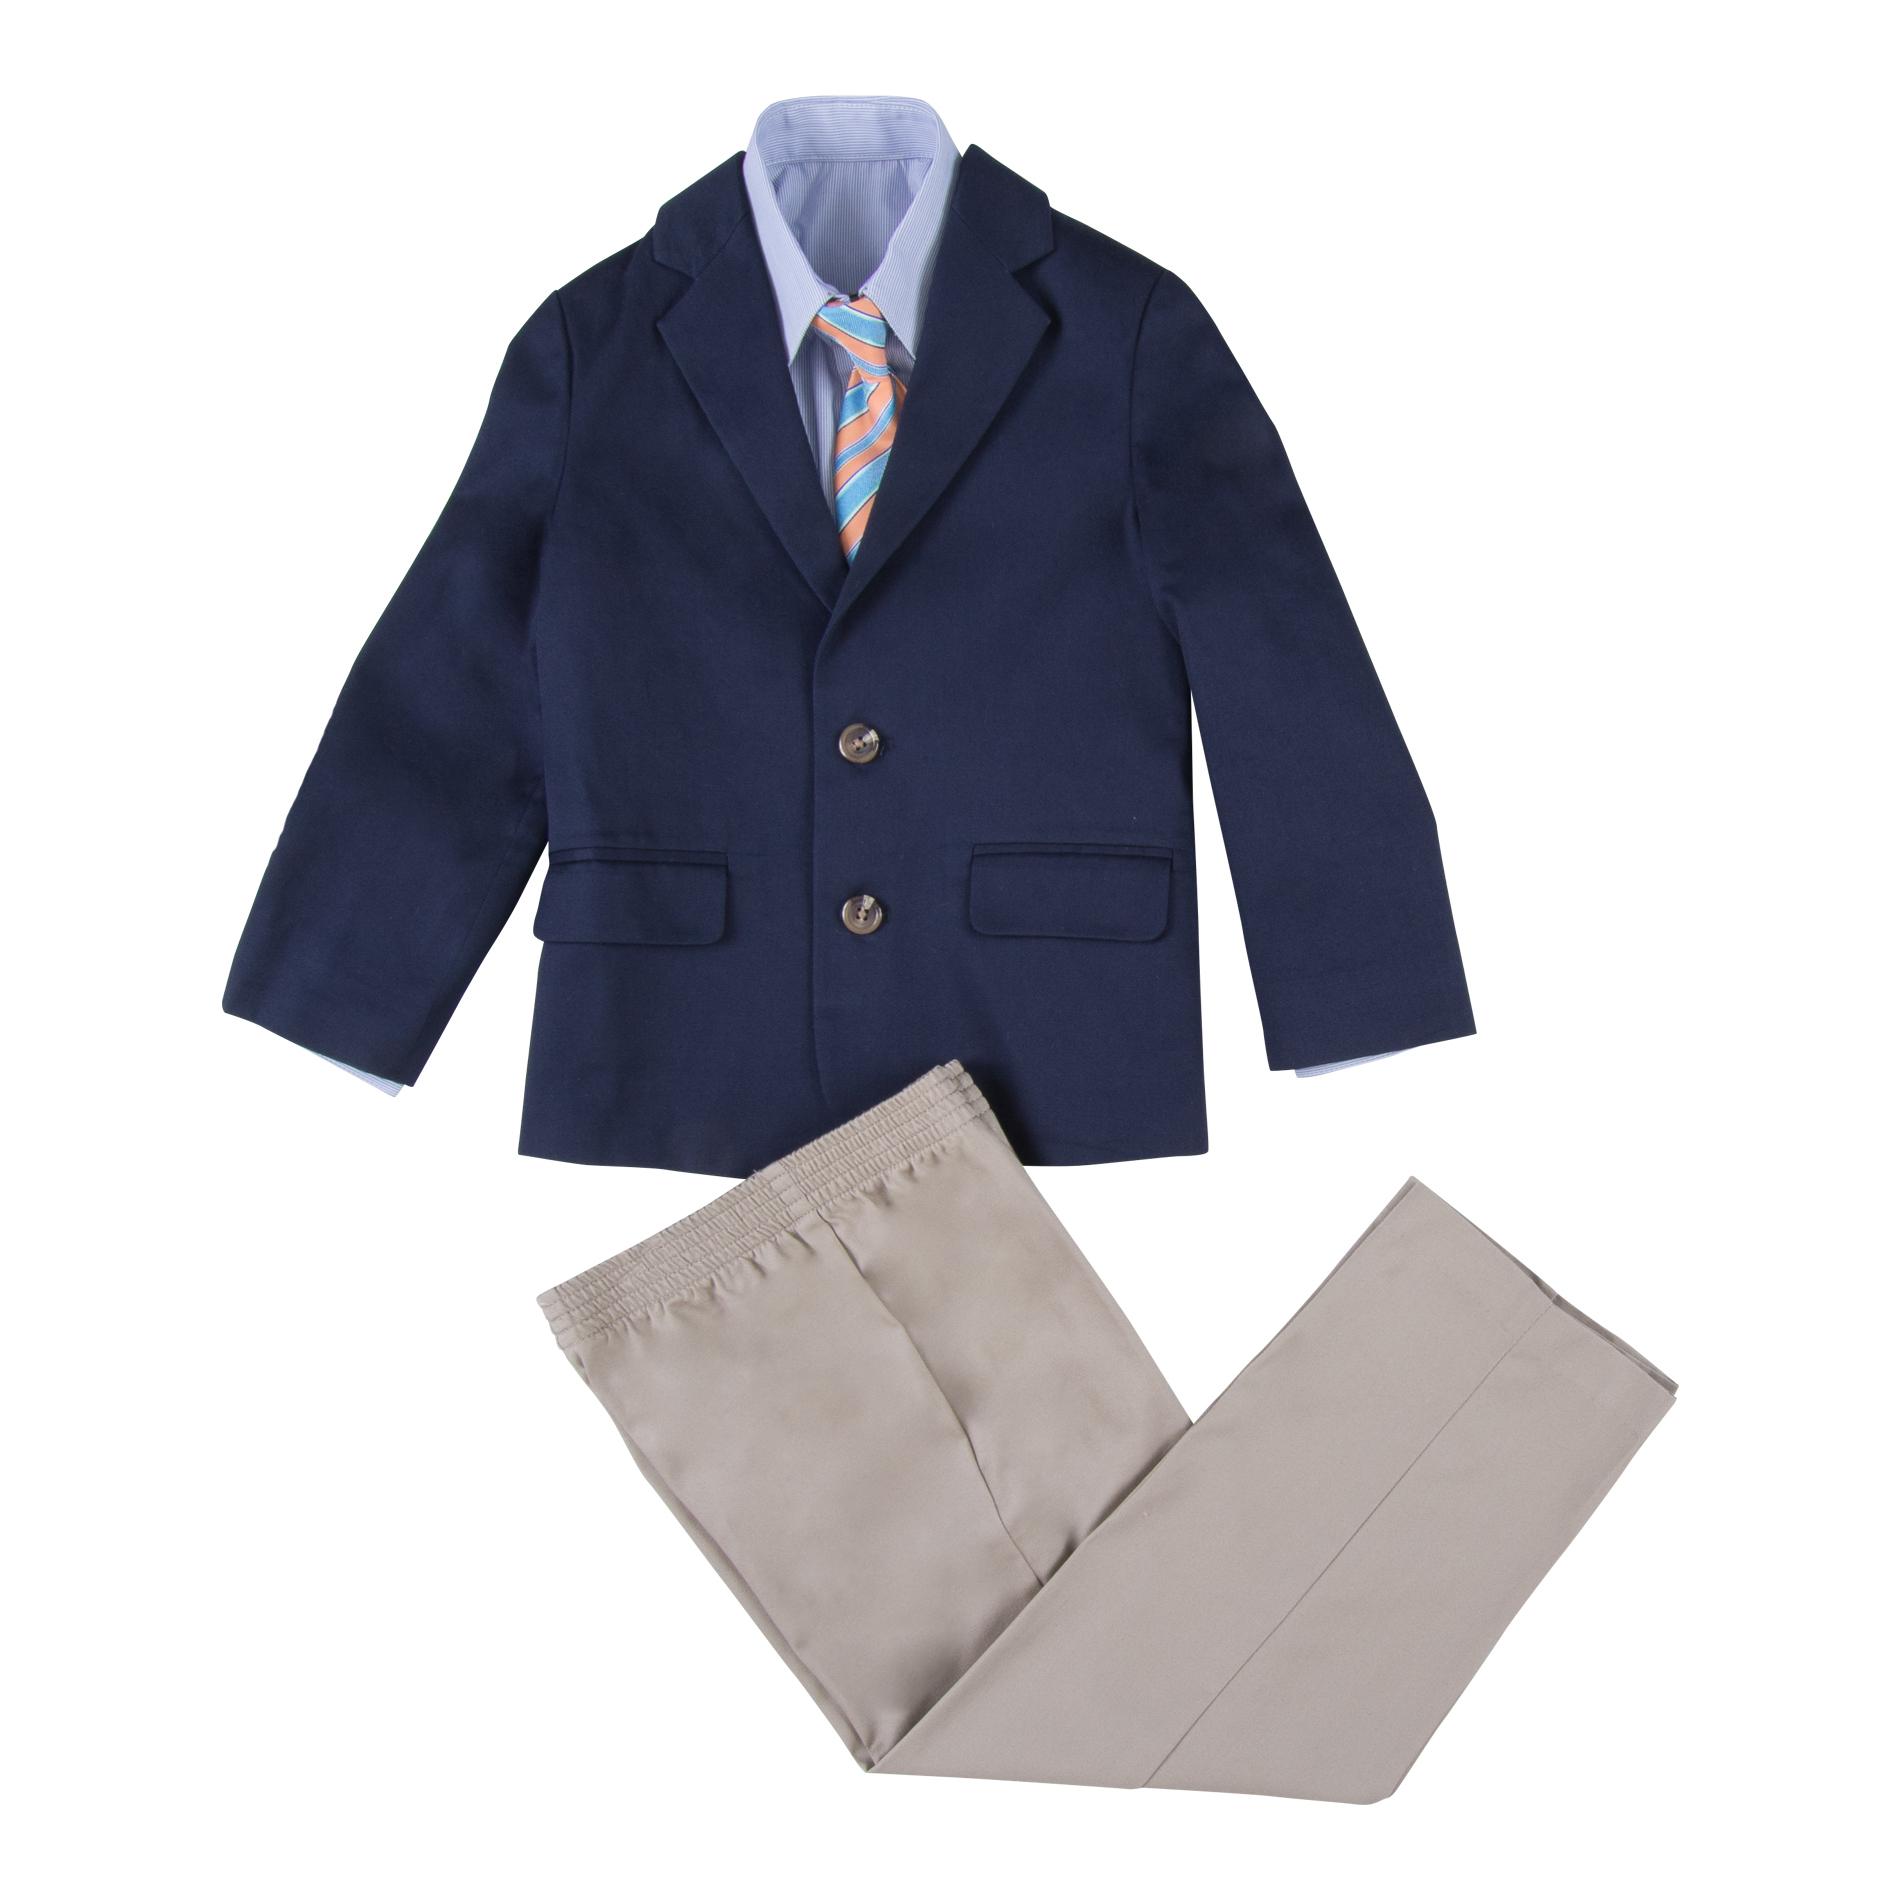 Dockers Boys' Dress Shirt, Blazer, Pants & Necktie - Striped